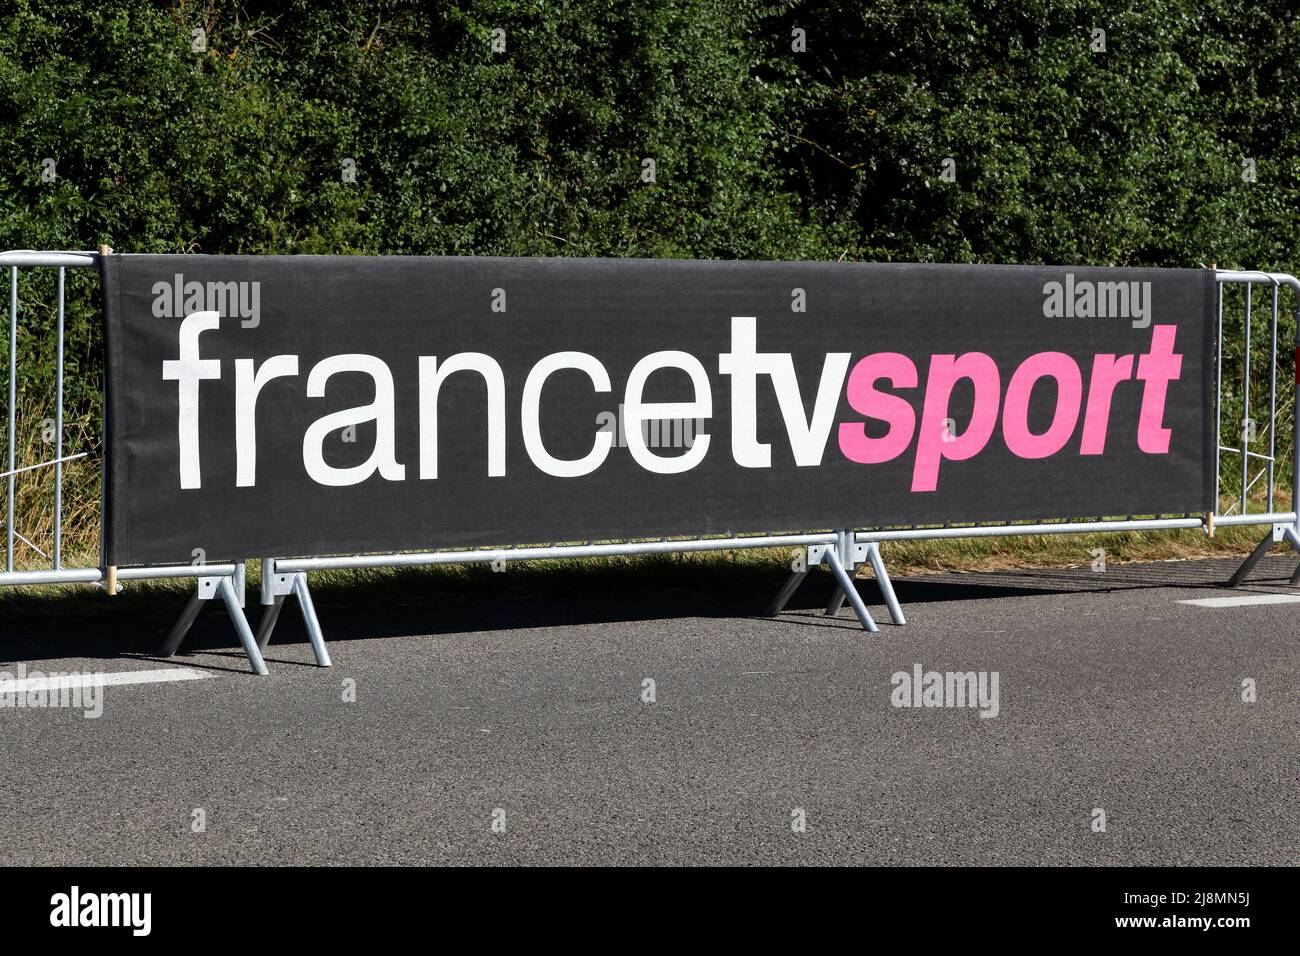 France tv sport Banque de photographies et d'images à haute résolution -  Alamy